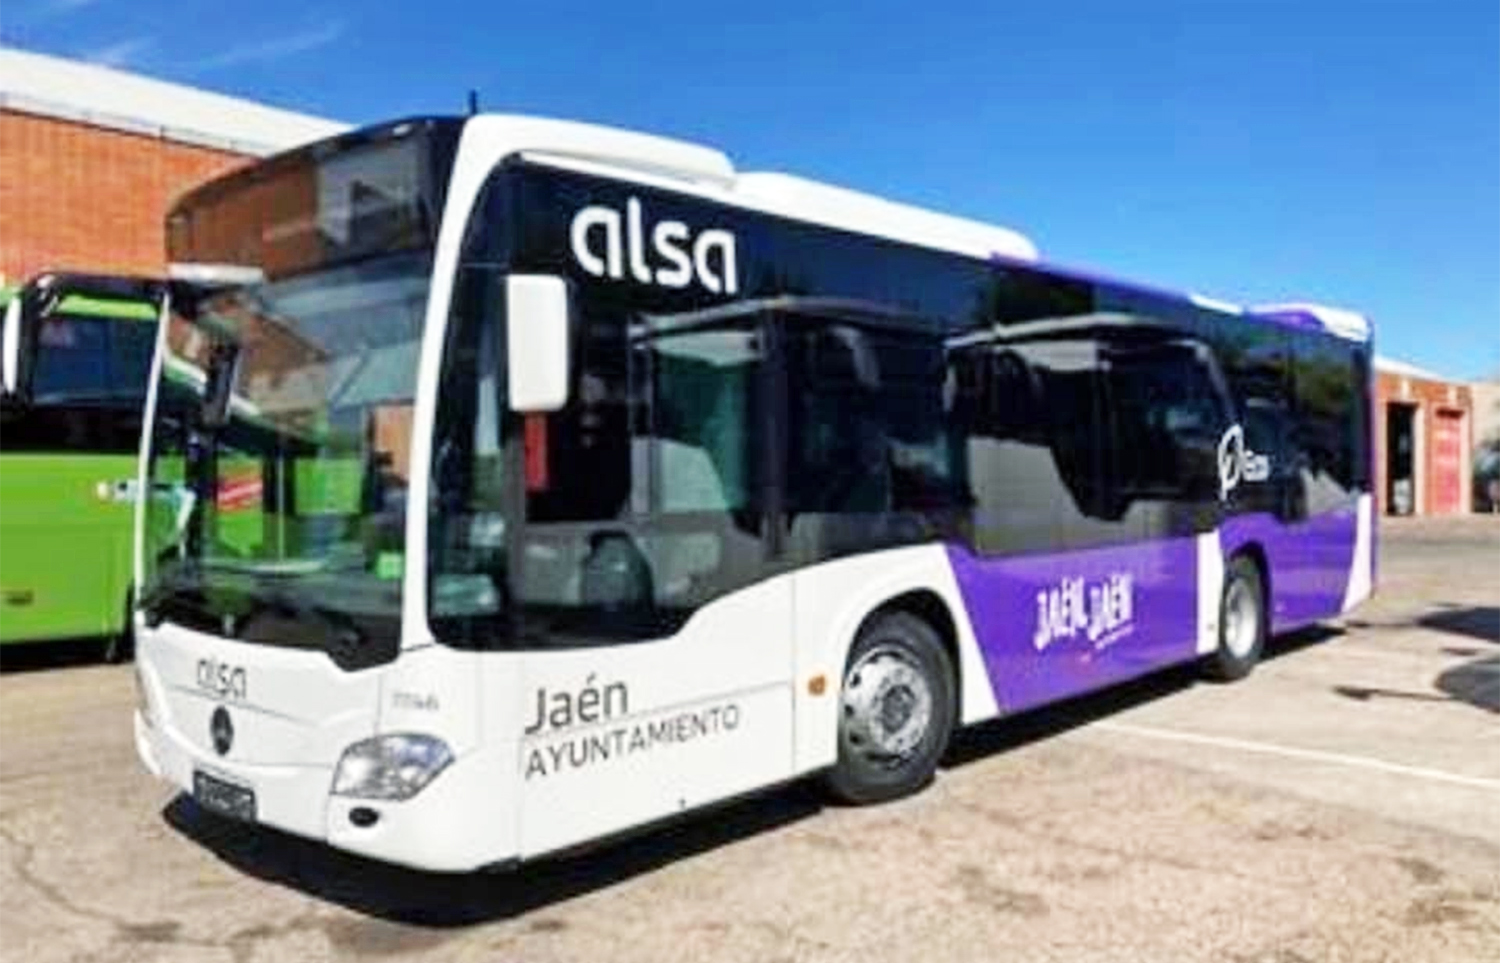 El nuevo servicio de autobuses de Alsa entrará en servicio en Jaén capital a partir del próximo viernes 8 de octubre 